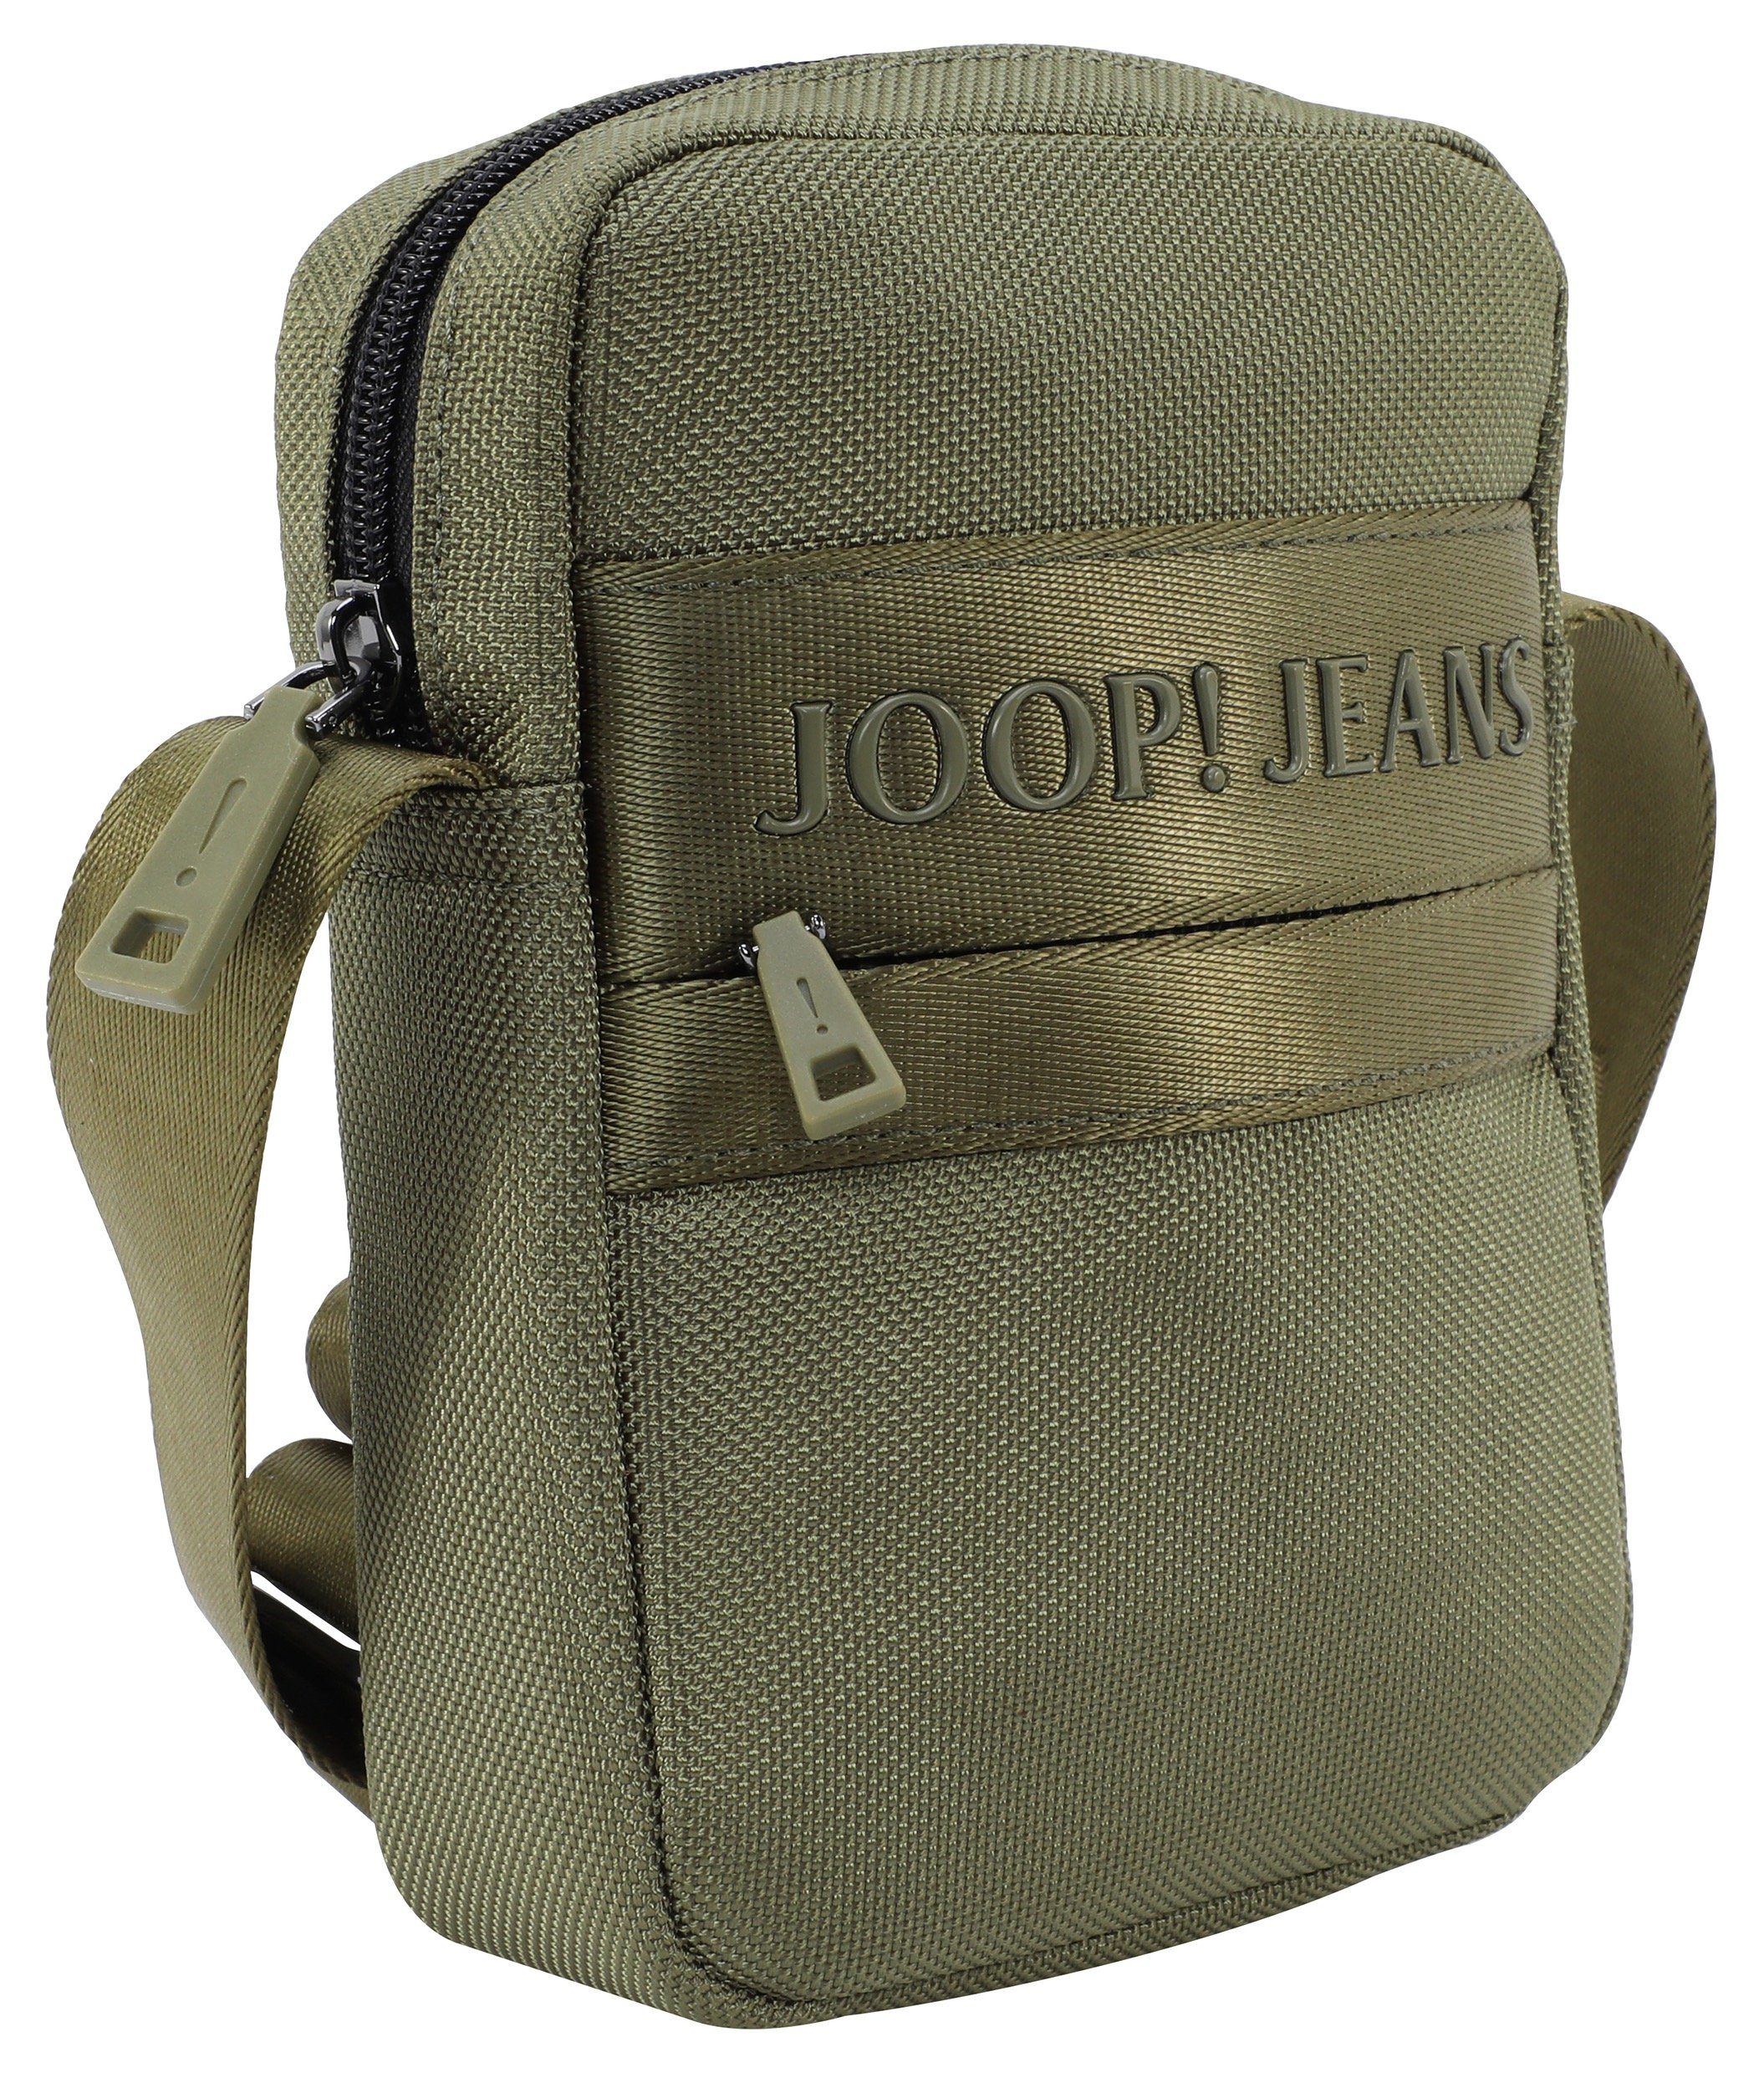 Joop Jeans Umhängetasche praktischen dunkelgrün modica xsvz, im rafael Design shoulderbag